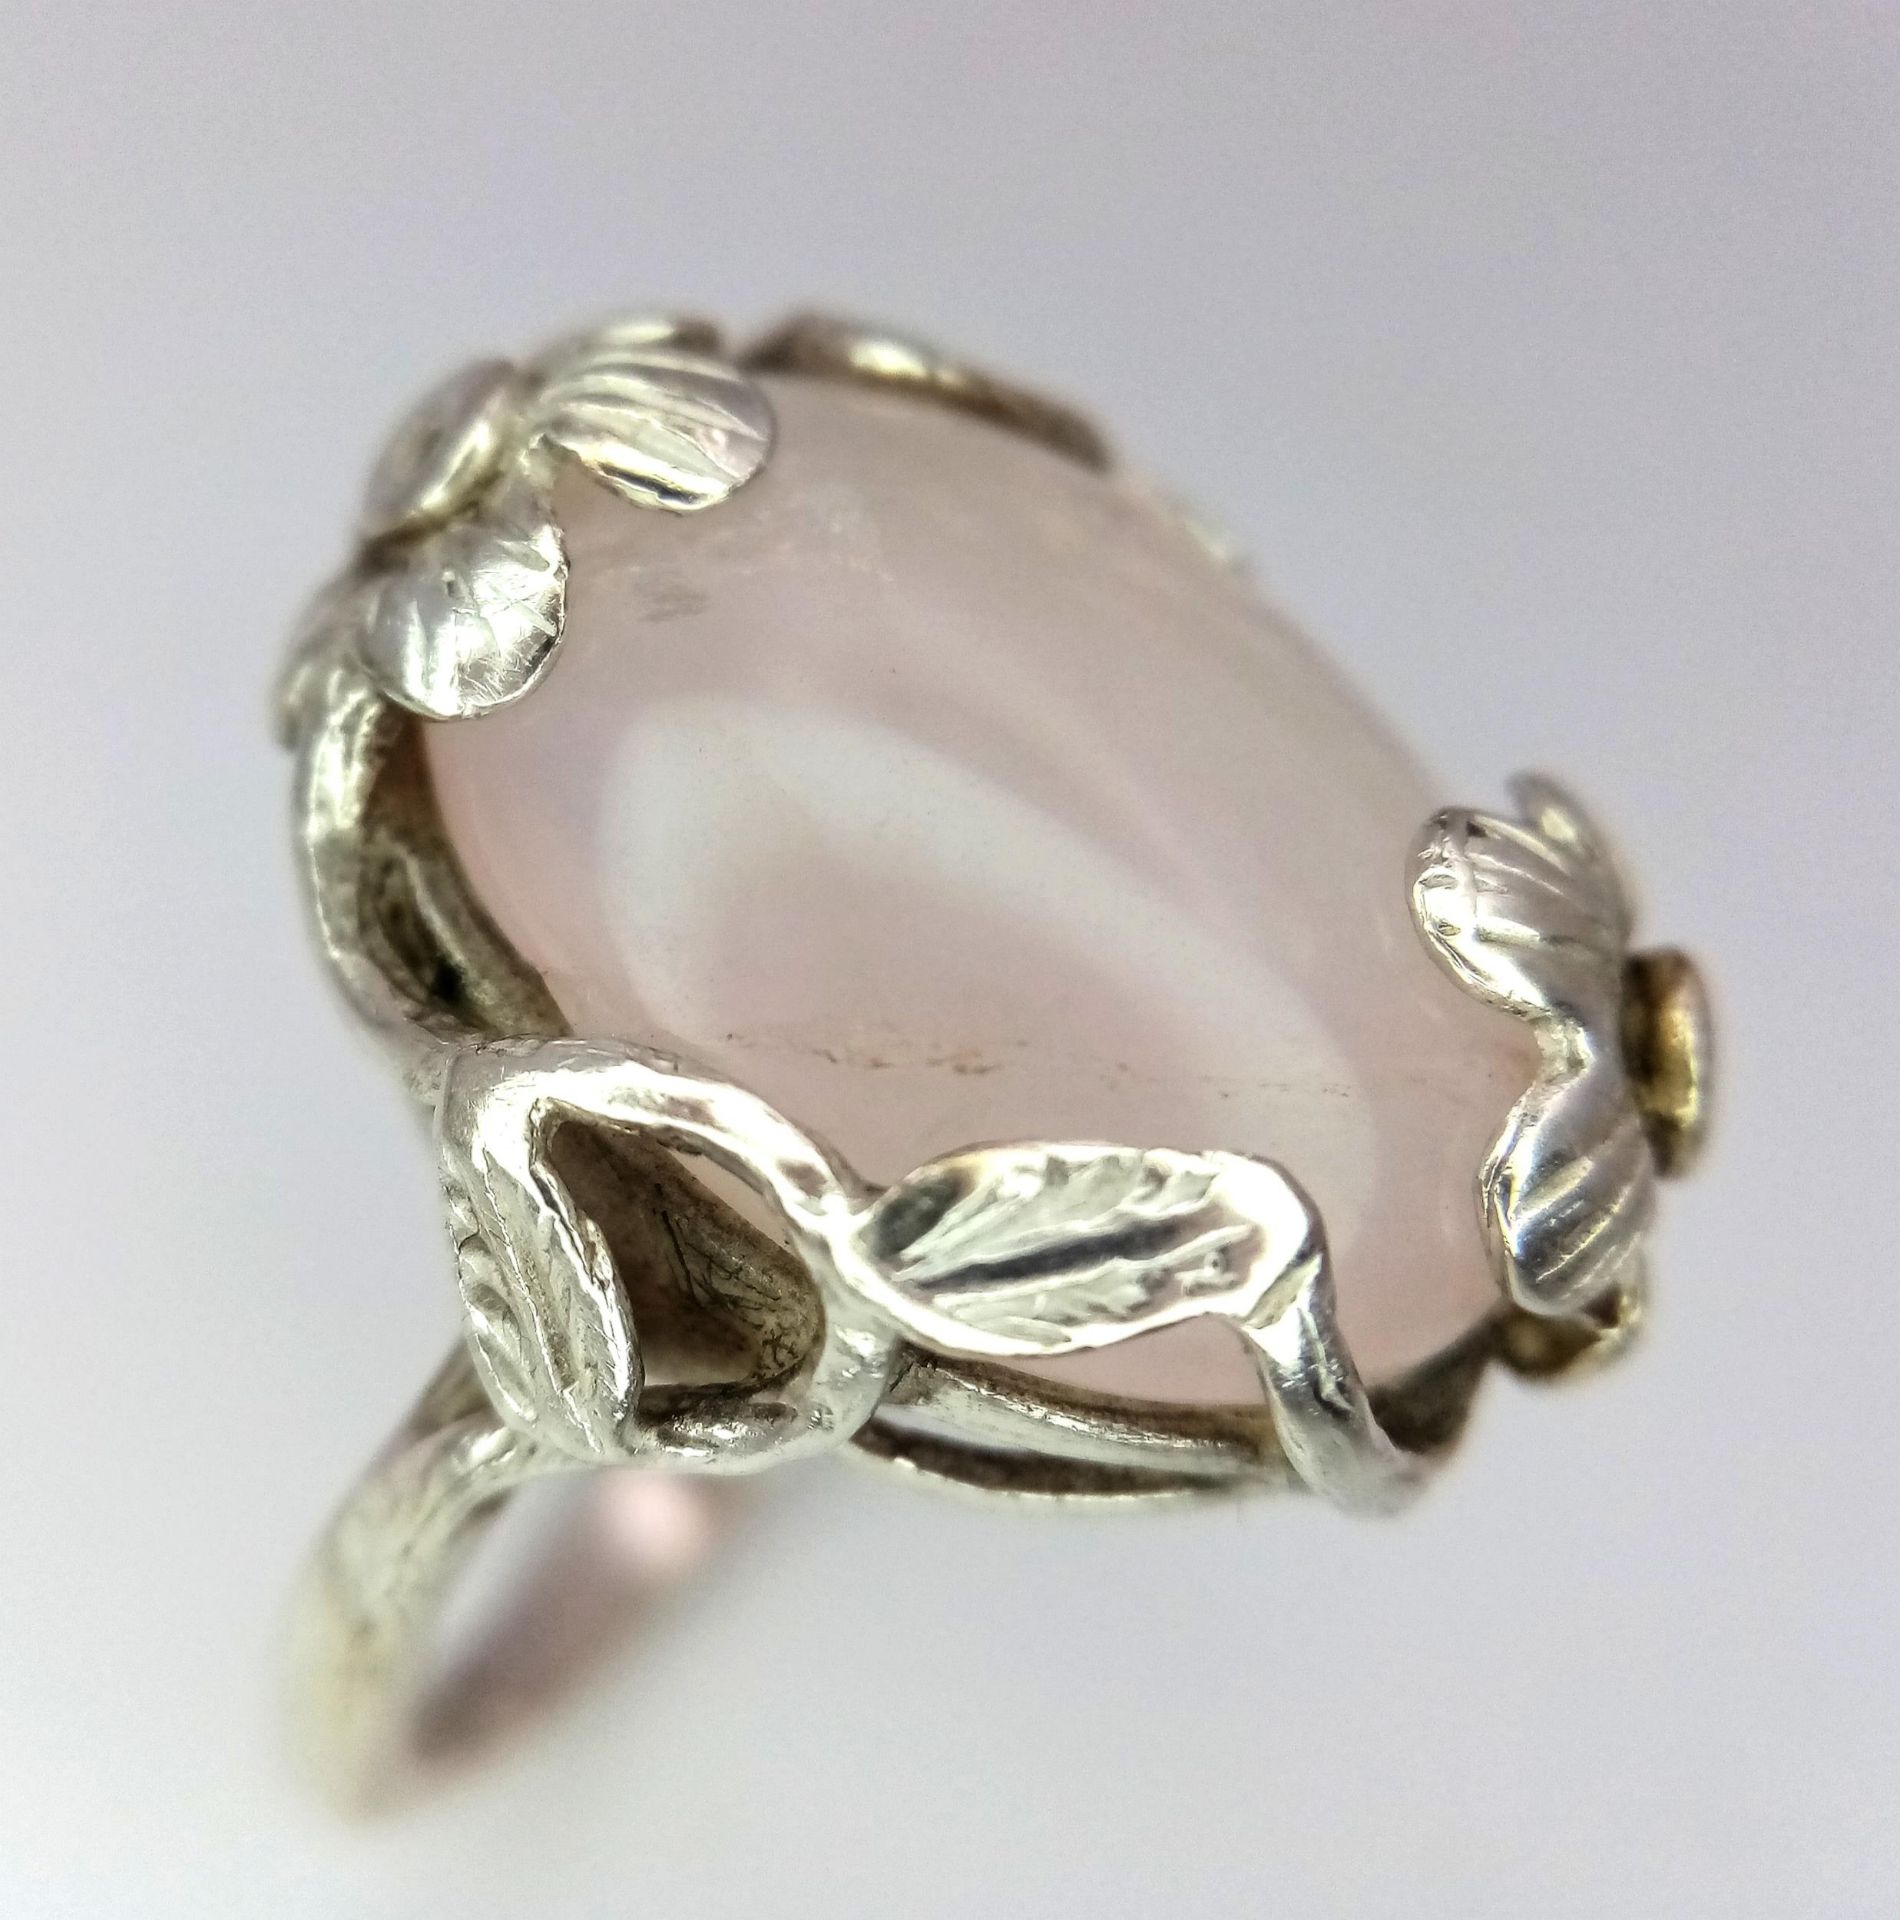 A Vintage, Ornate Flower Design Mounted, Rose Quartz Cabochon Sterling Silver Ring Size R. Set